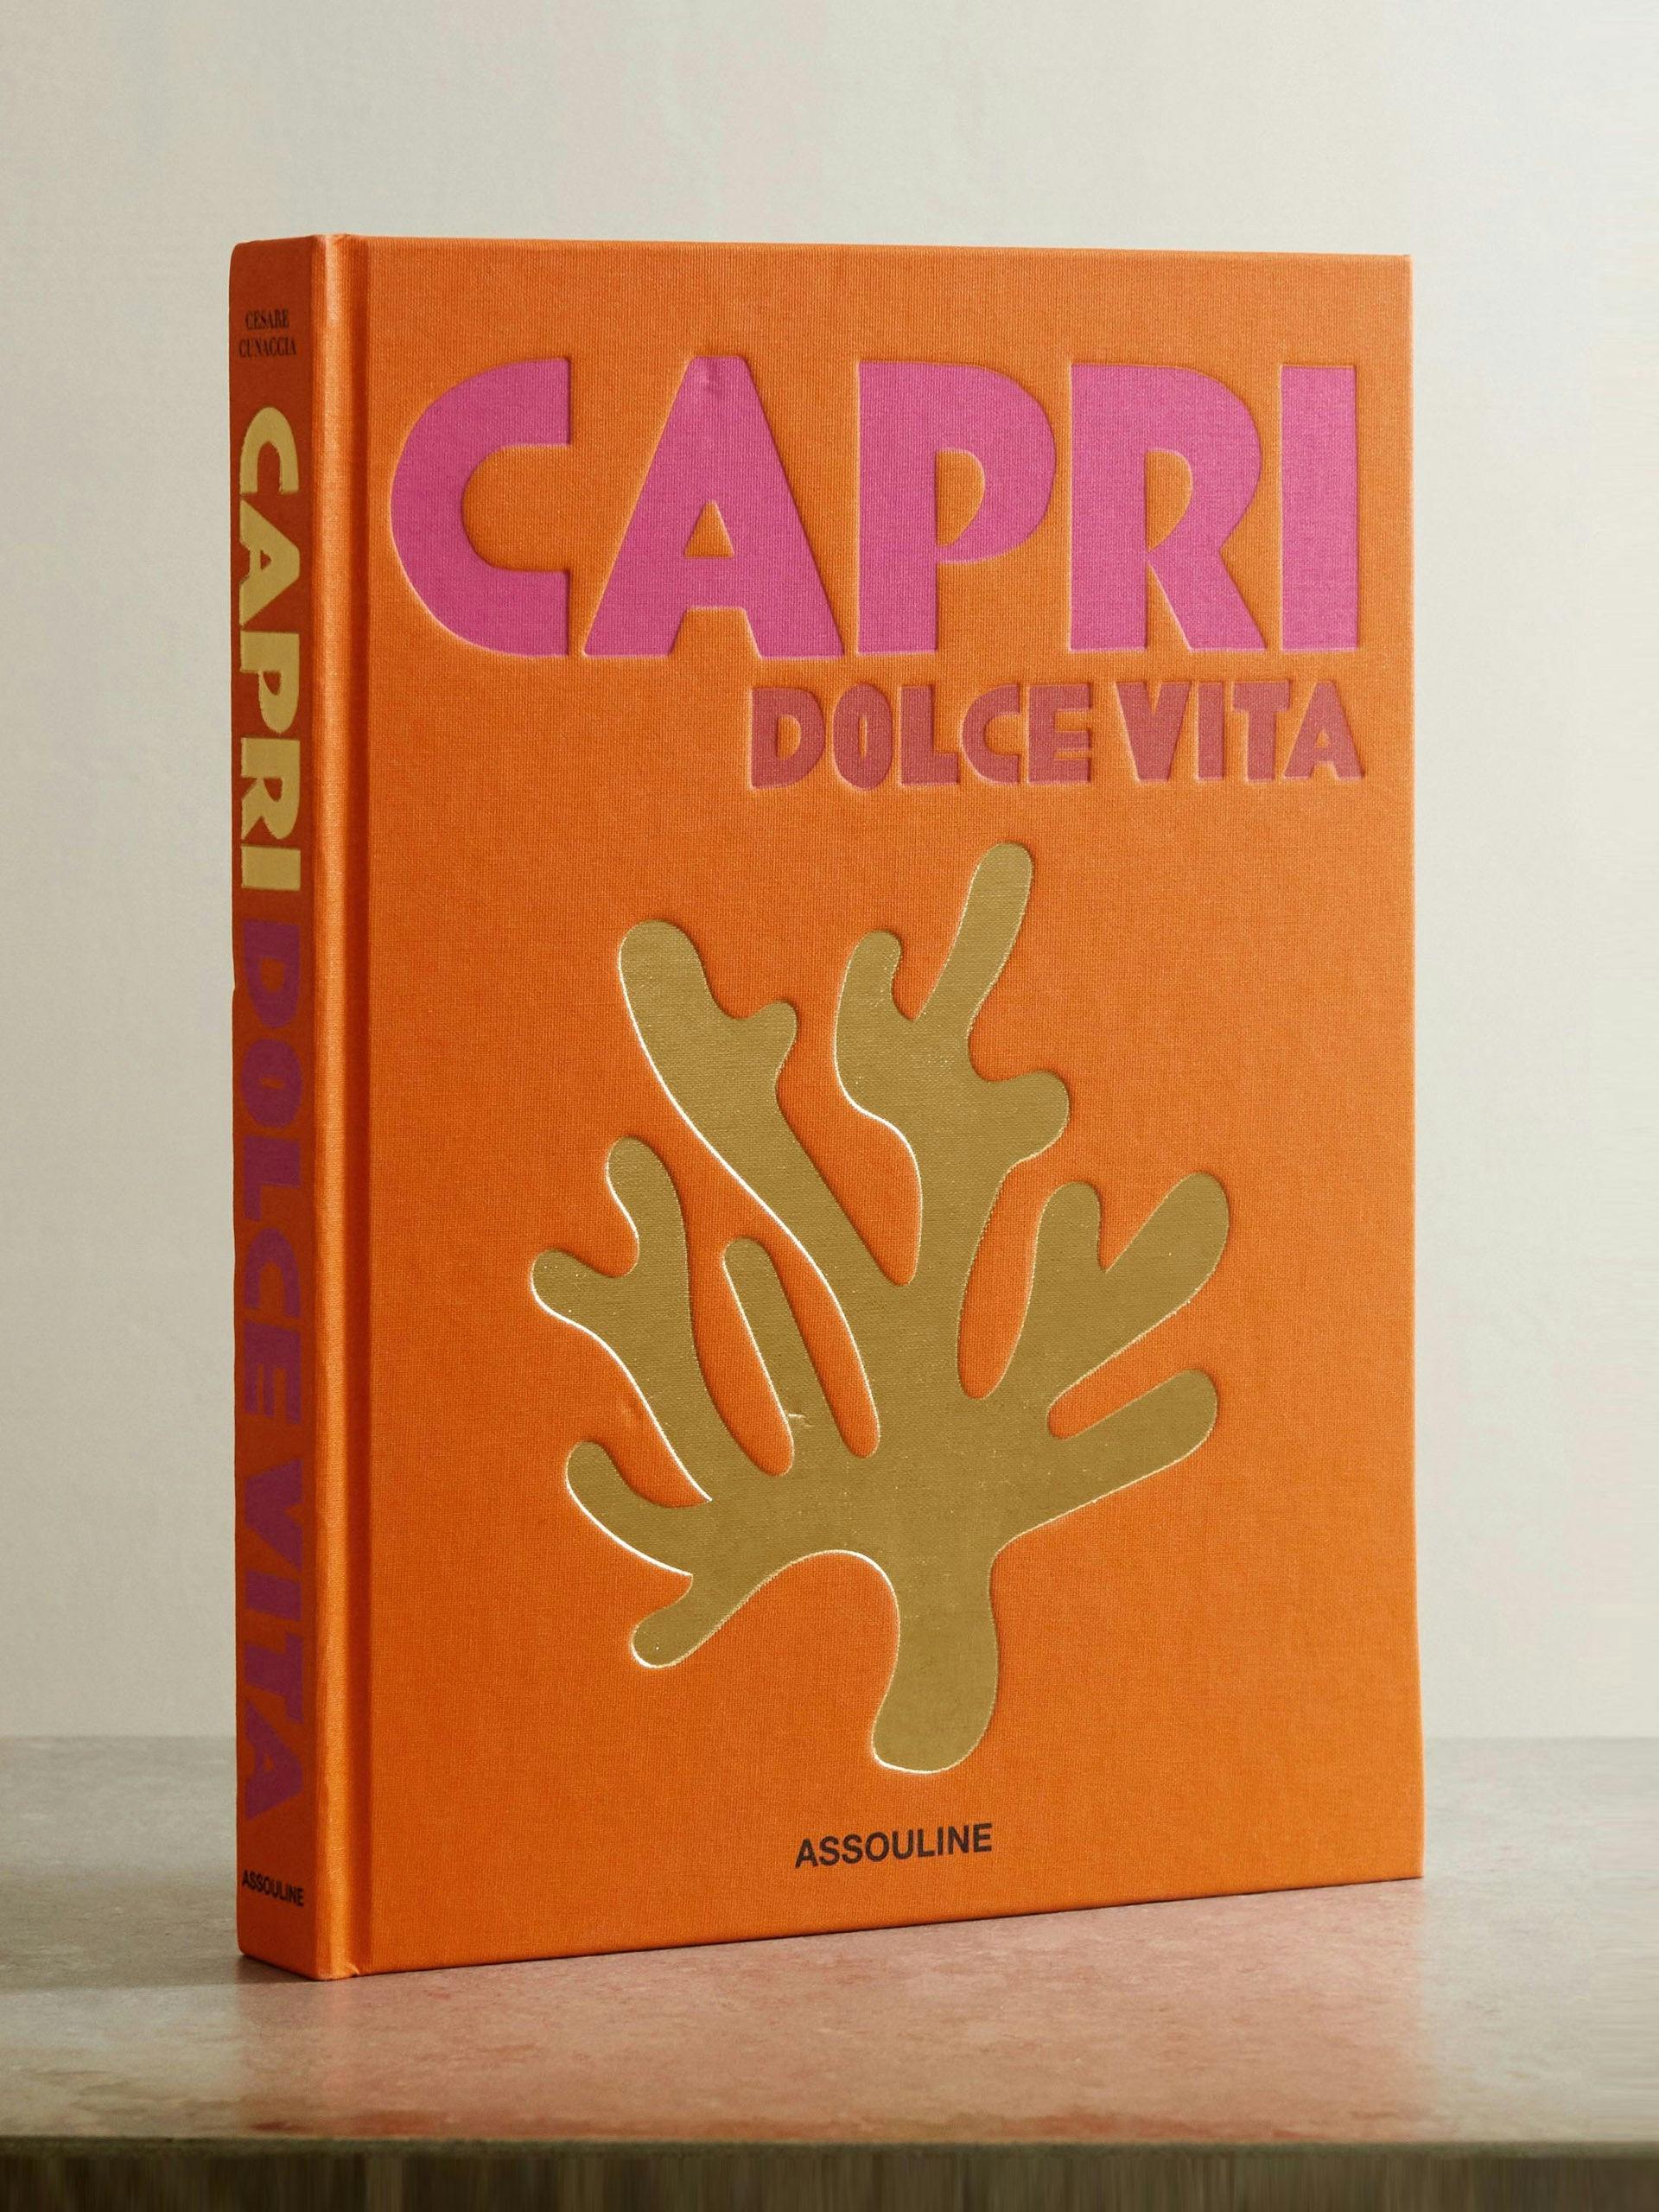 Capri Dolce Vita by Cesare Cunaccia hardcover book